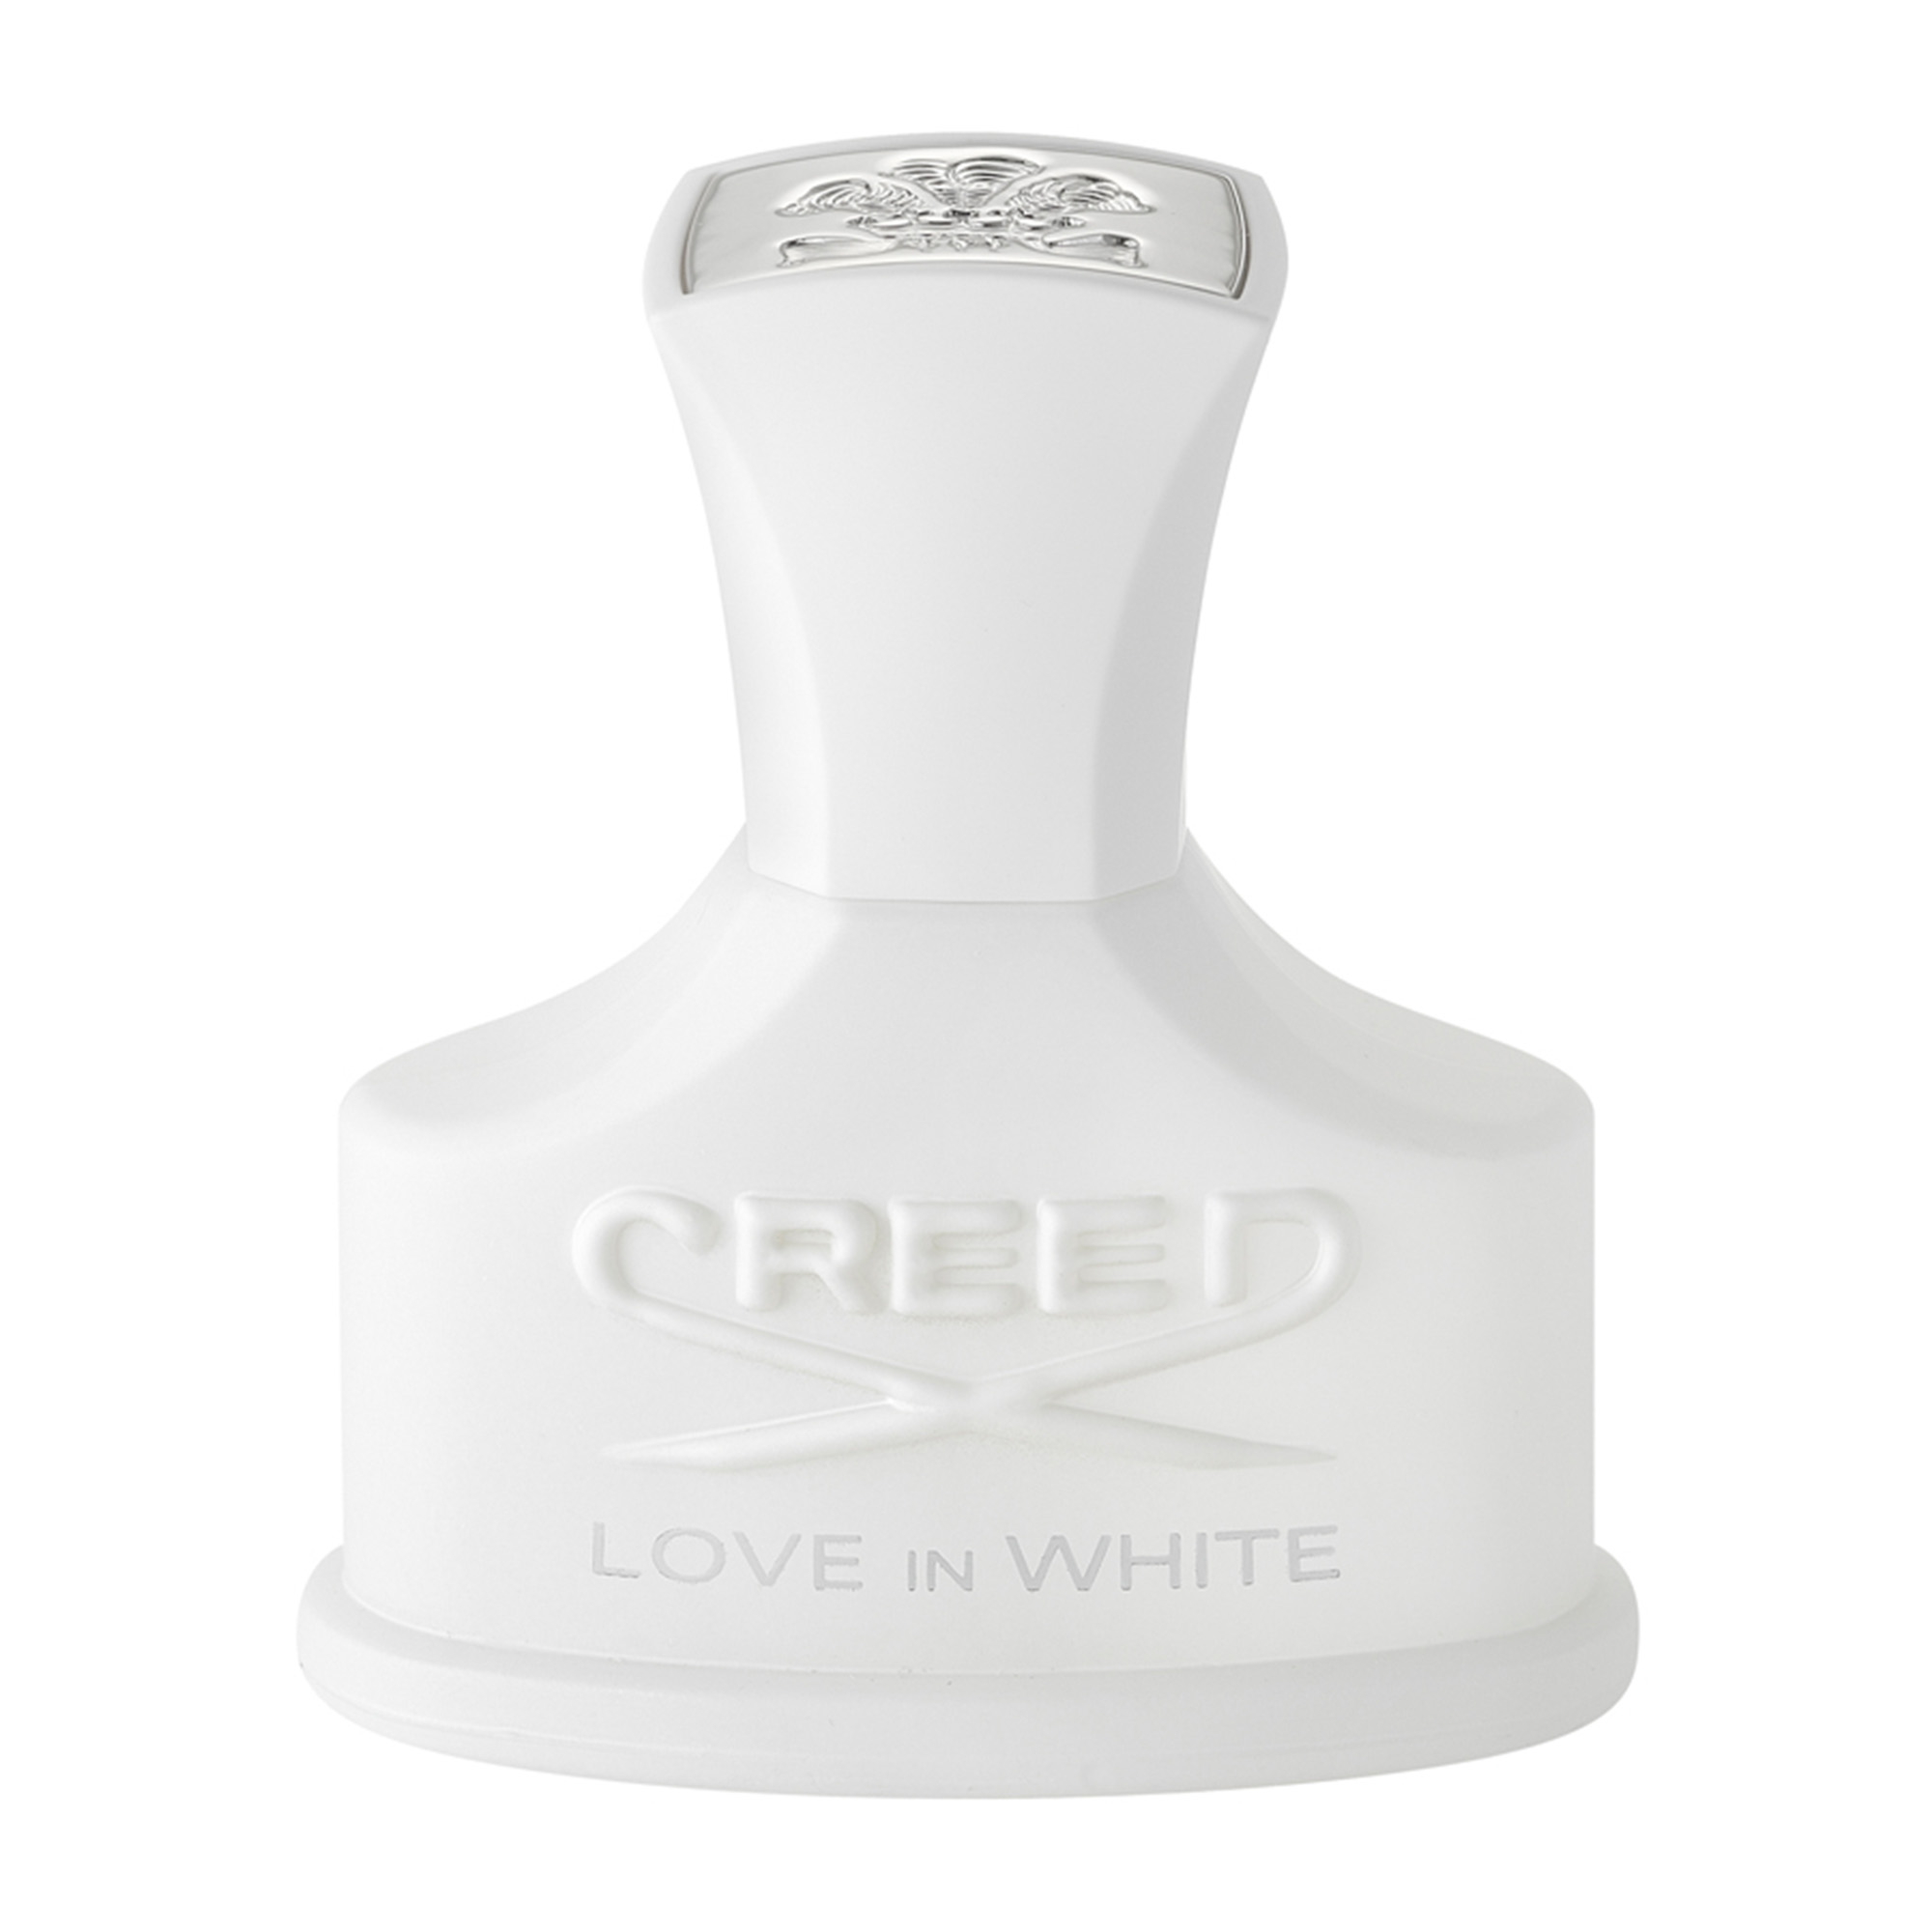 Creed Love in white Eau de Parfum 30ml Spray